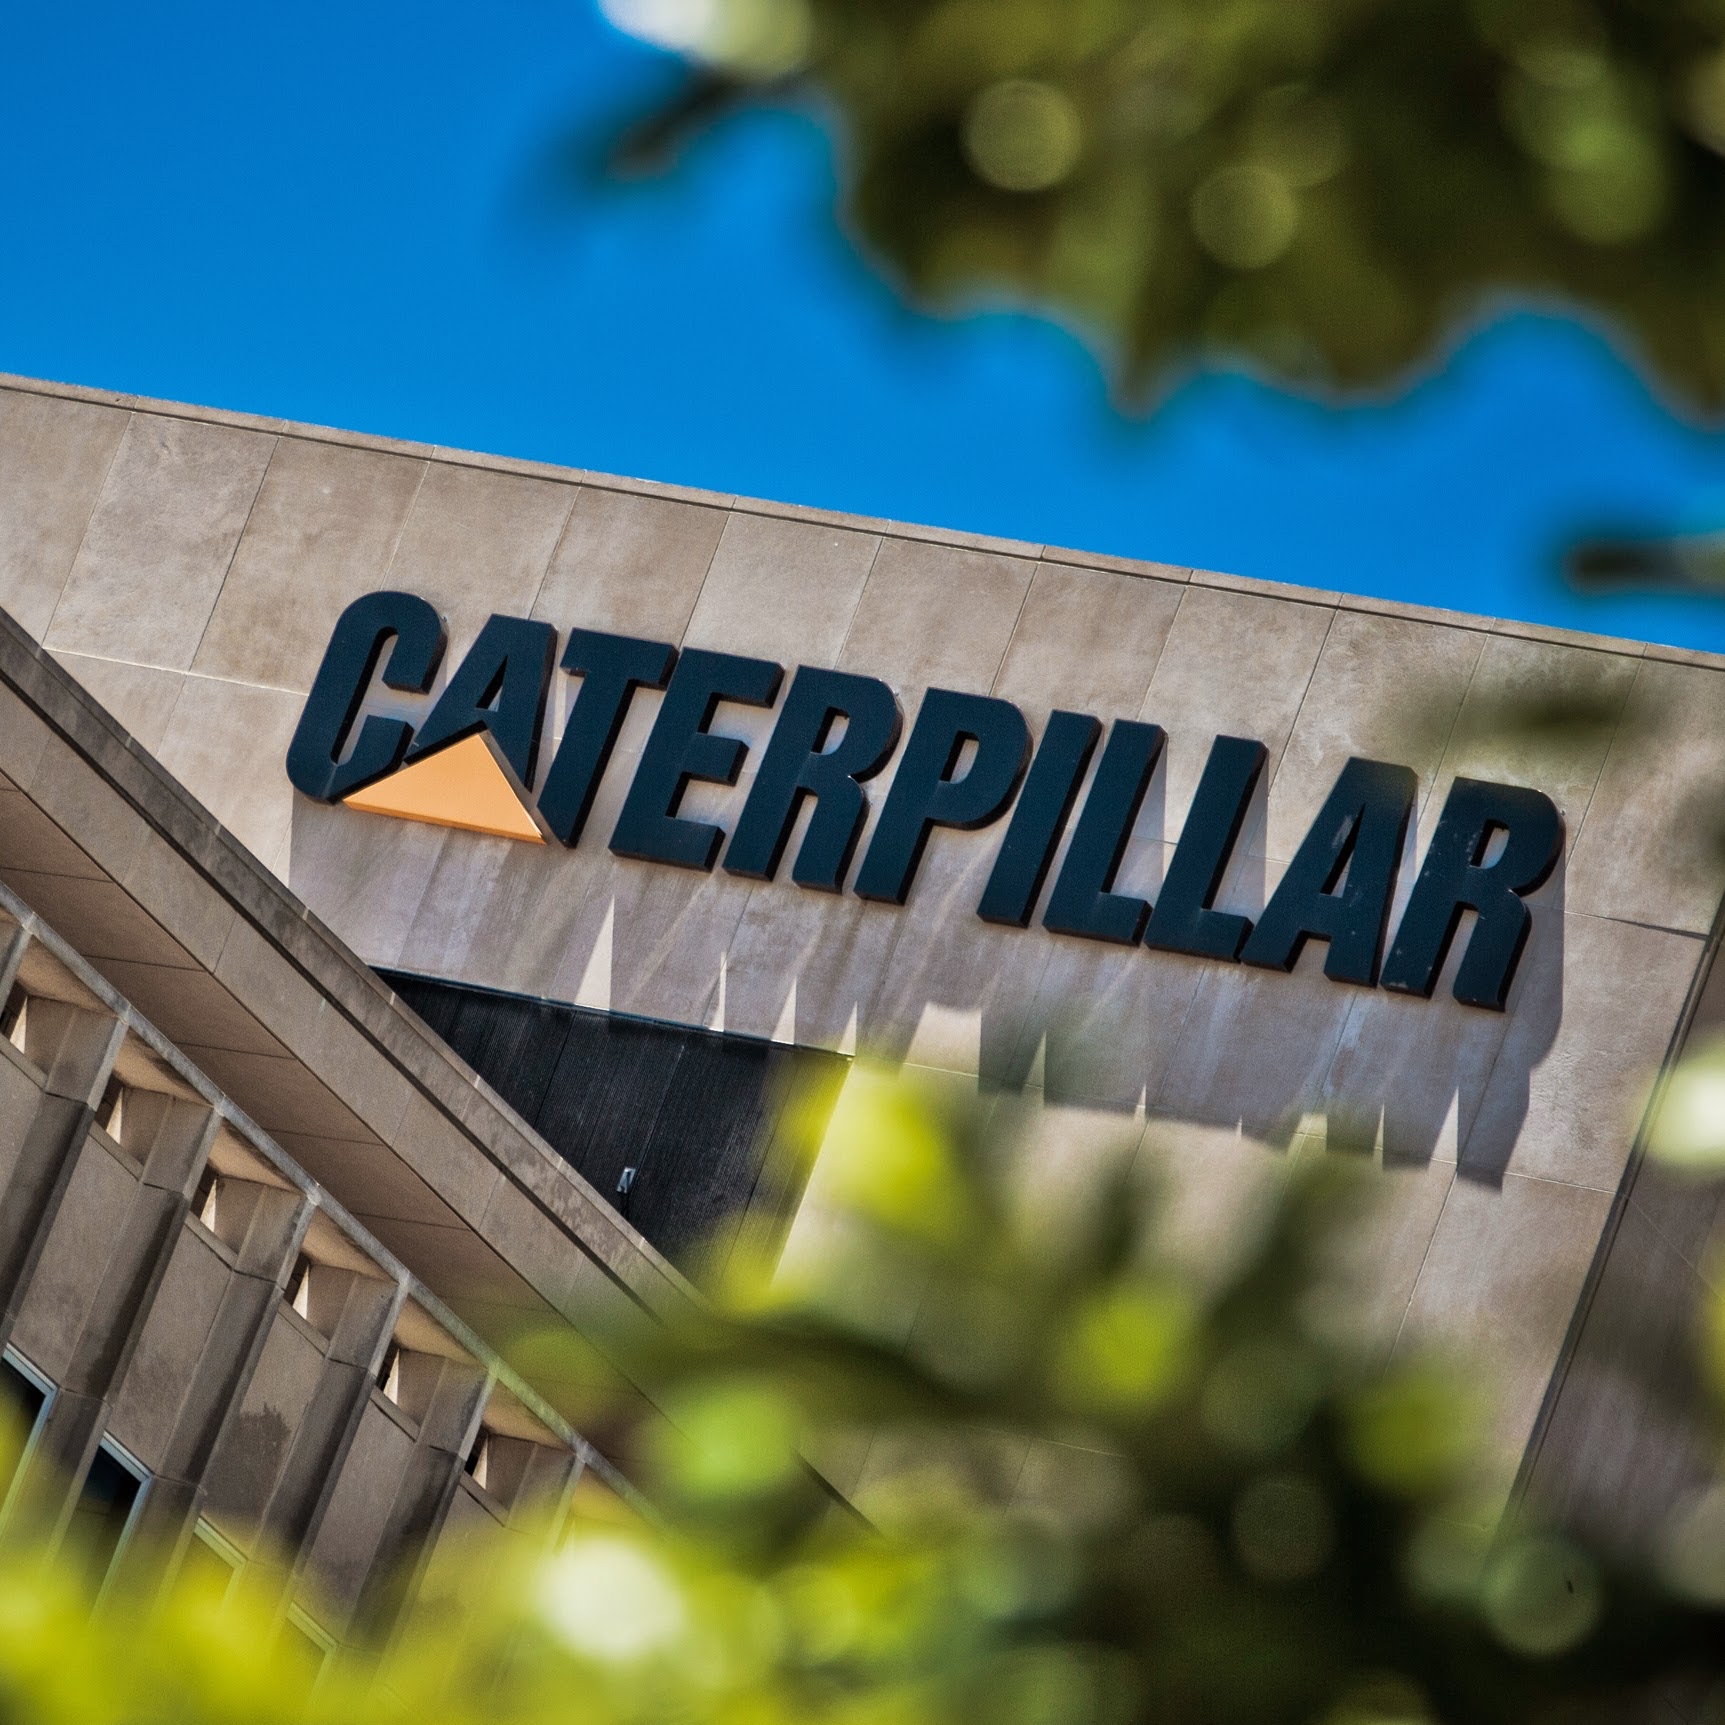 Компания Caterpillar планирует изготавливать свою технику в Азии под двумя брендами